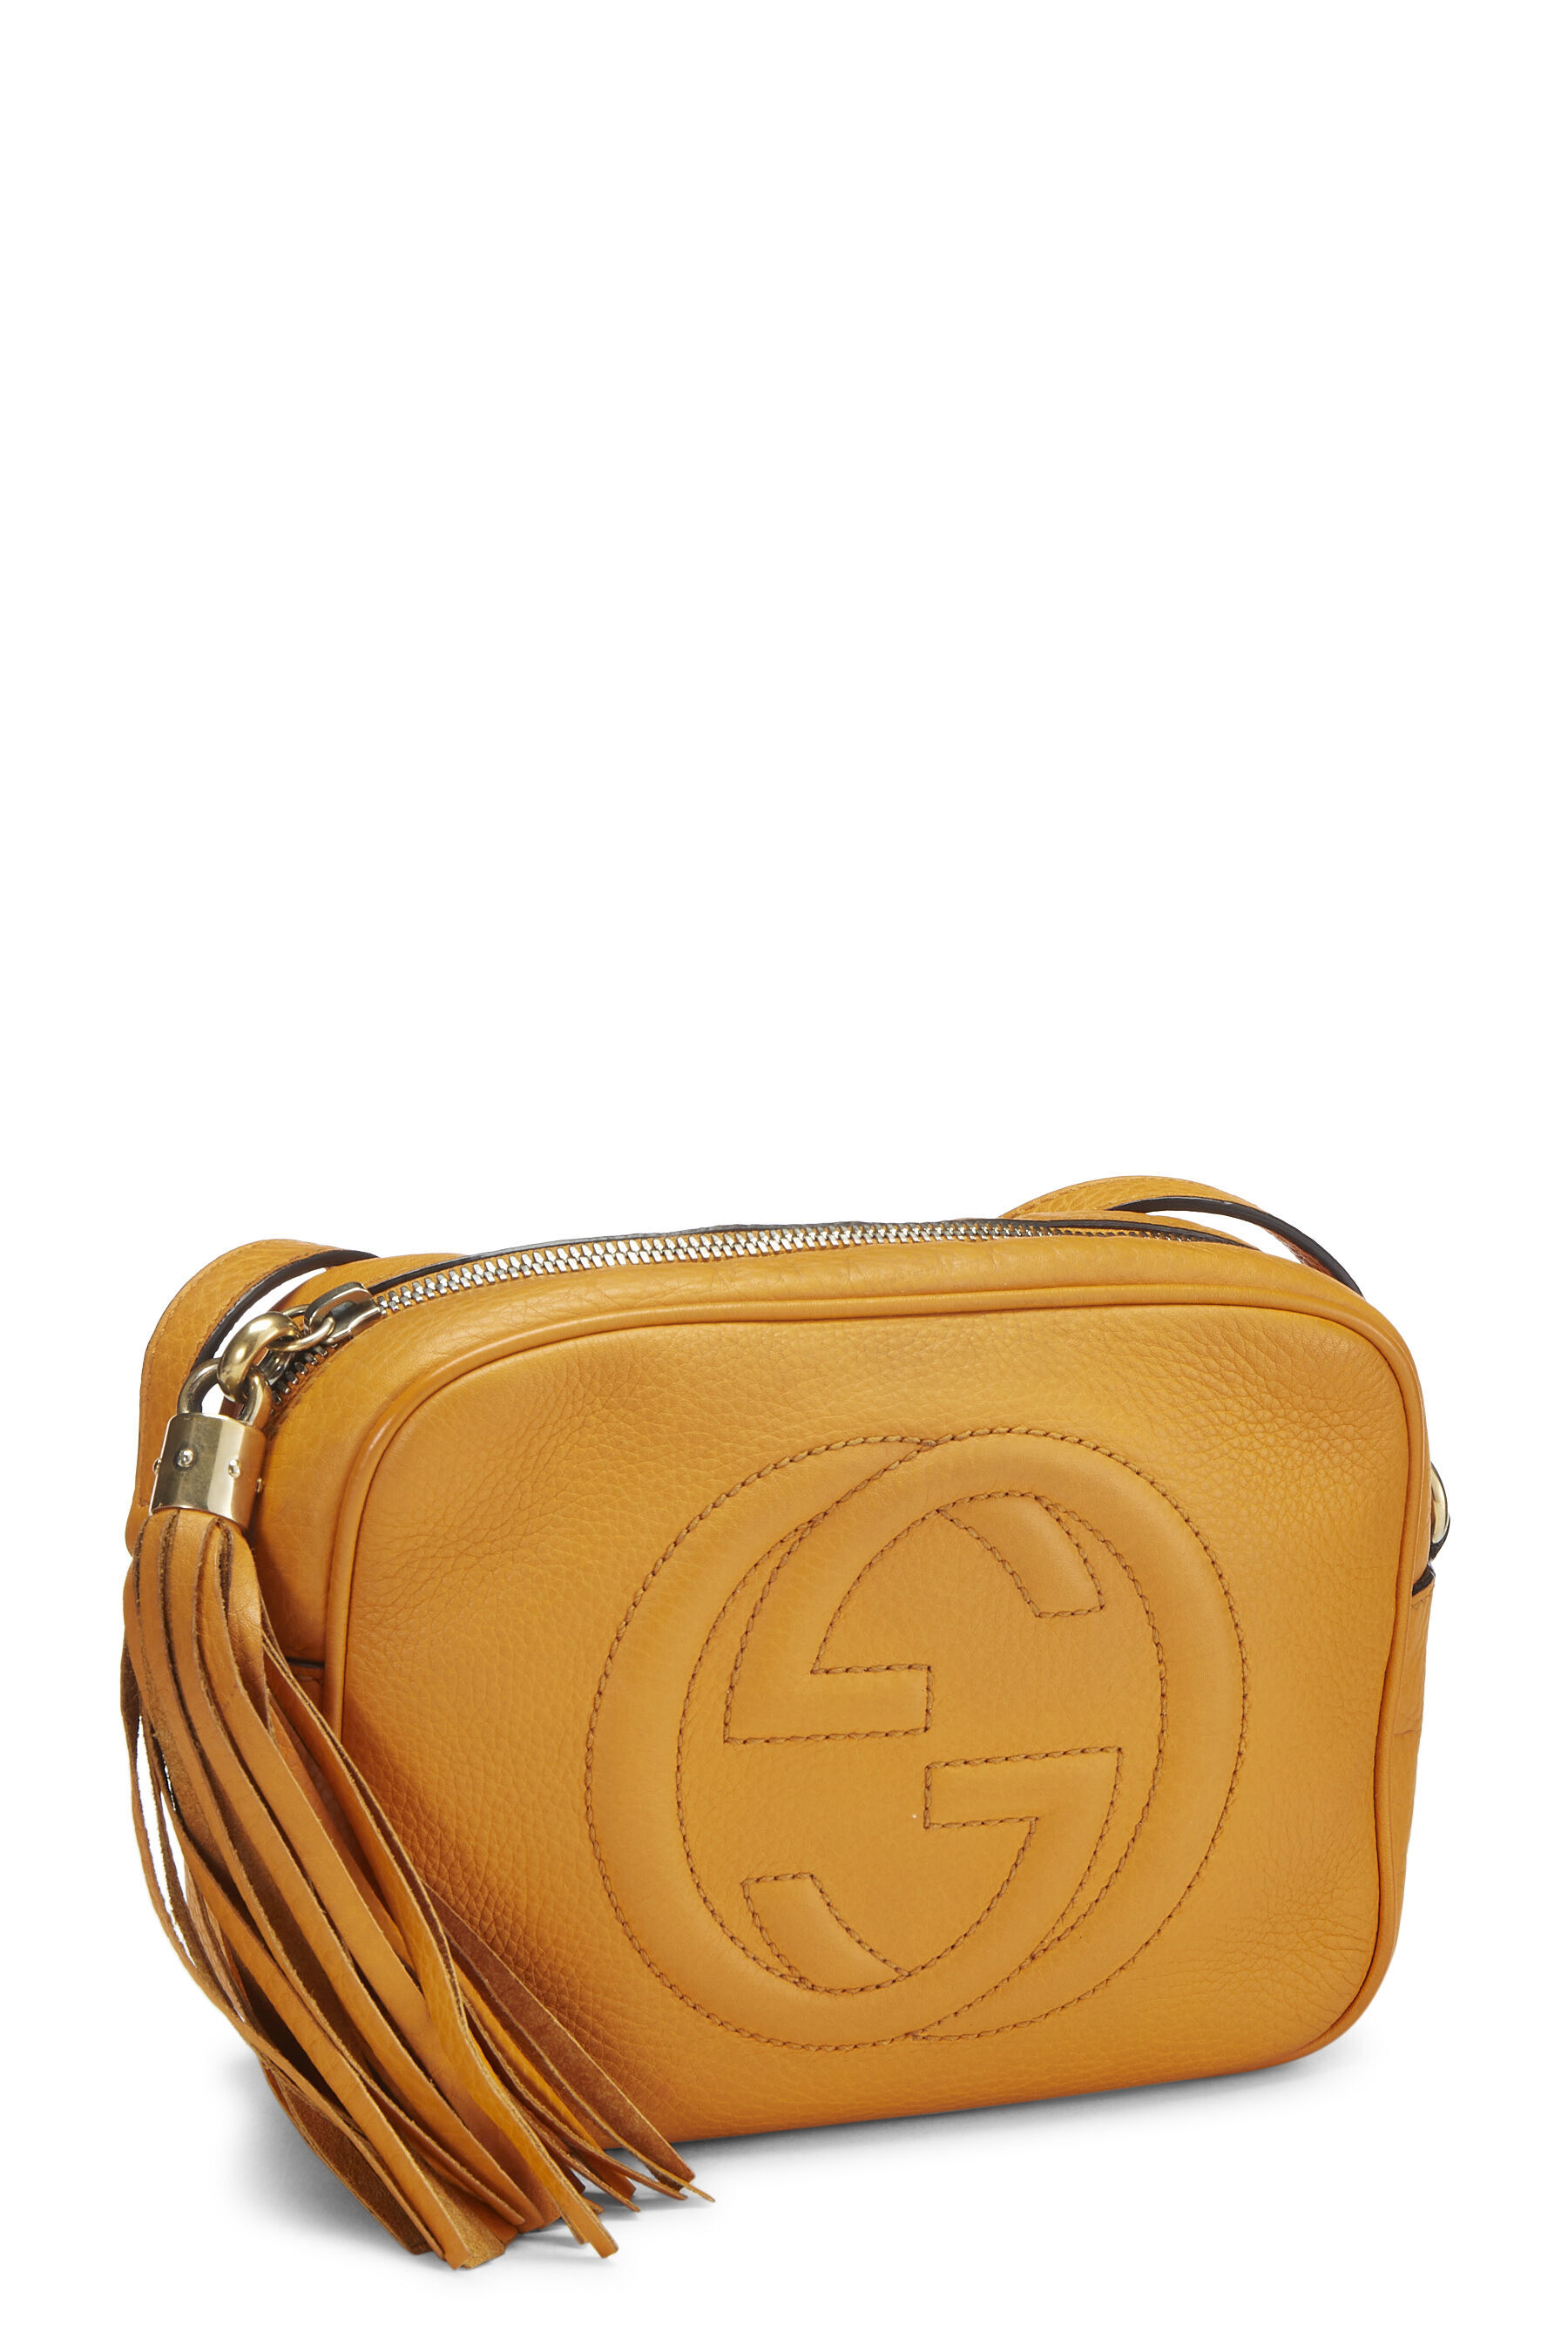 GG Matelassé small bag in orange leather | GUCCI® SG